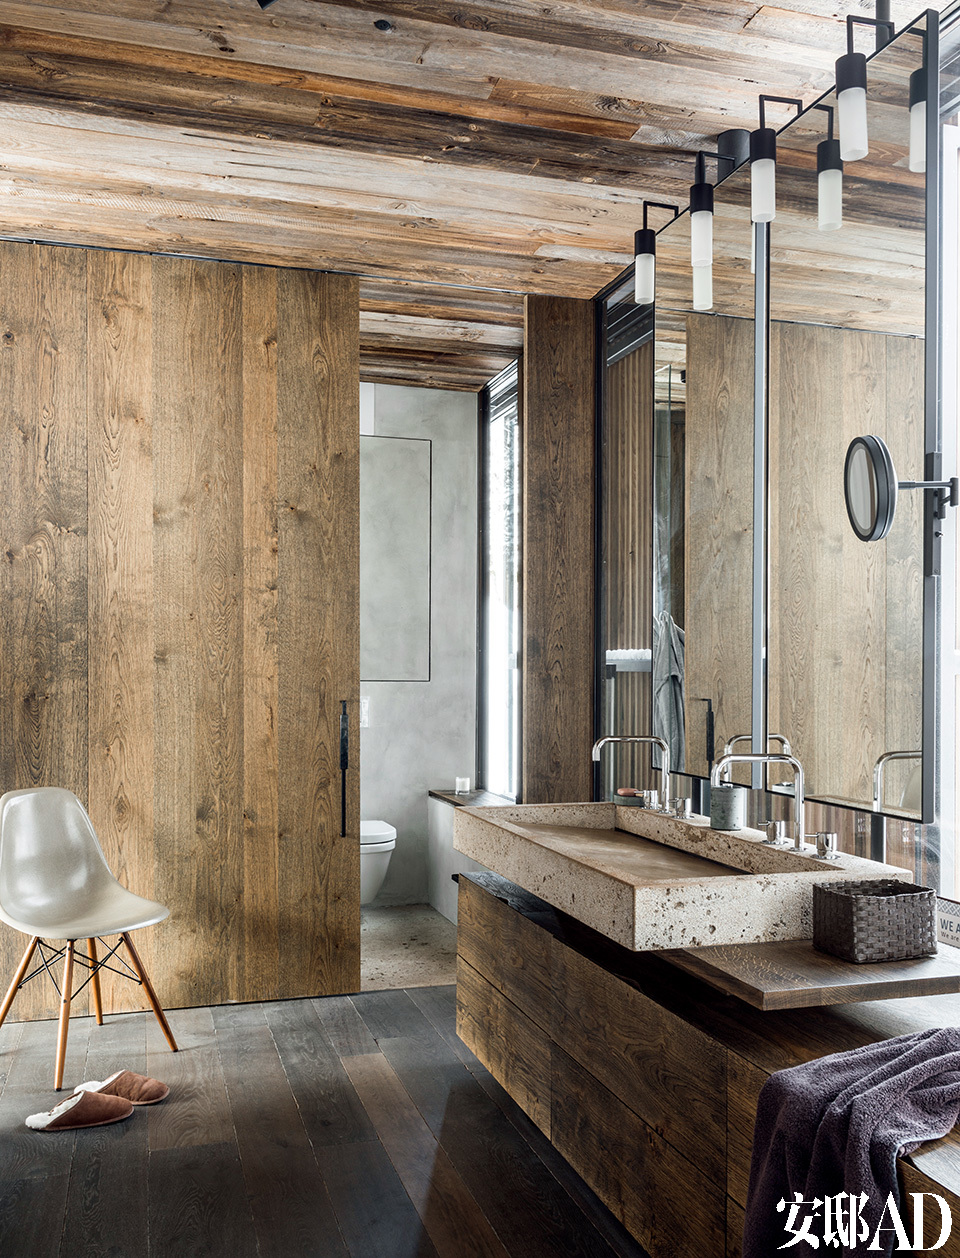 地板、 天花和推拉门皆选用当地橡木， 完美的颜色成为整个家最亮眼的核心。大浴室的设计是建筑师Monika Gogl把深色橡木和米黄色的天然石做了完美结合。盥洗池来自于kamanaturstein.at；椅子是Vitra品牌的佳作。